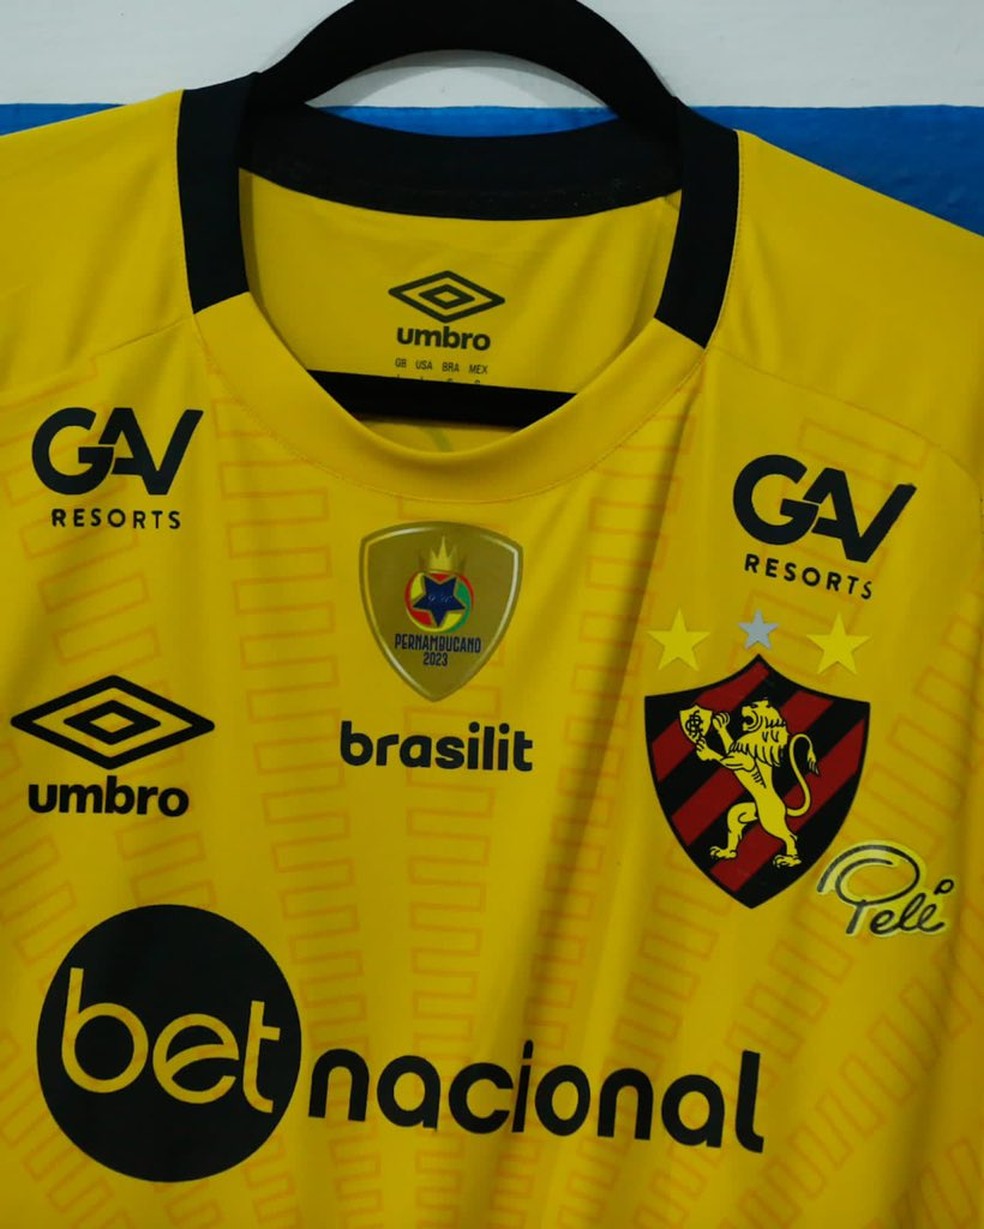 Sport usa camisa amarela de goleiro como uniforme para homenagear Pelé, sport